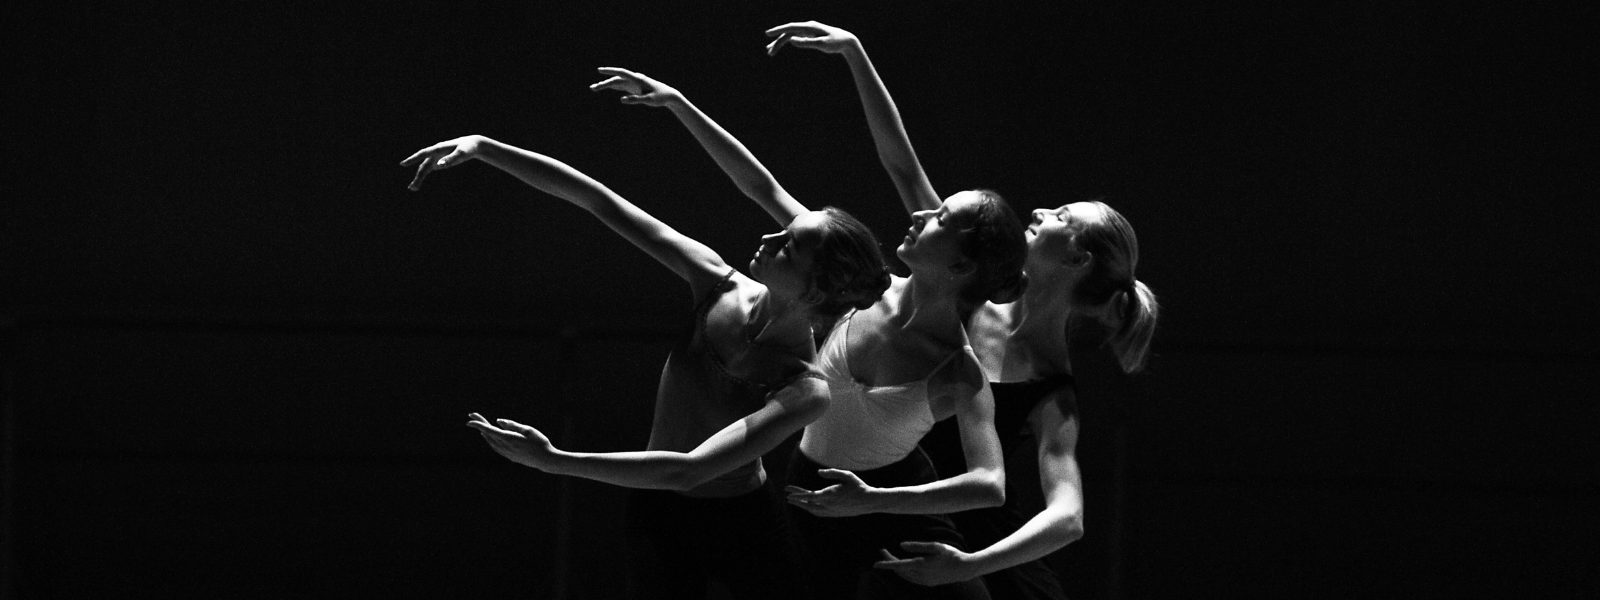 La danza como una disciplina artística universal